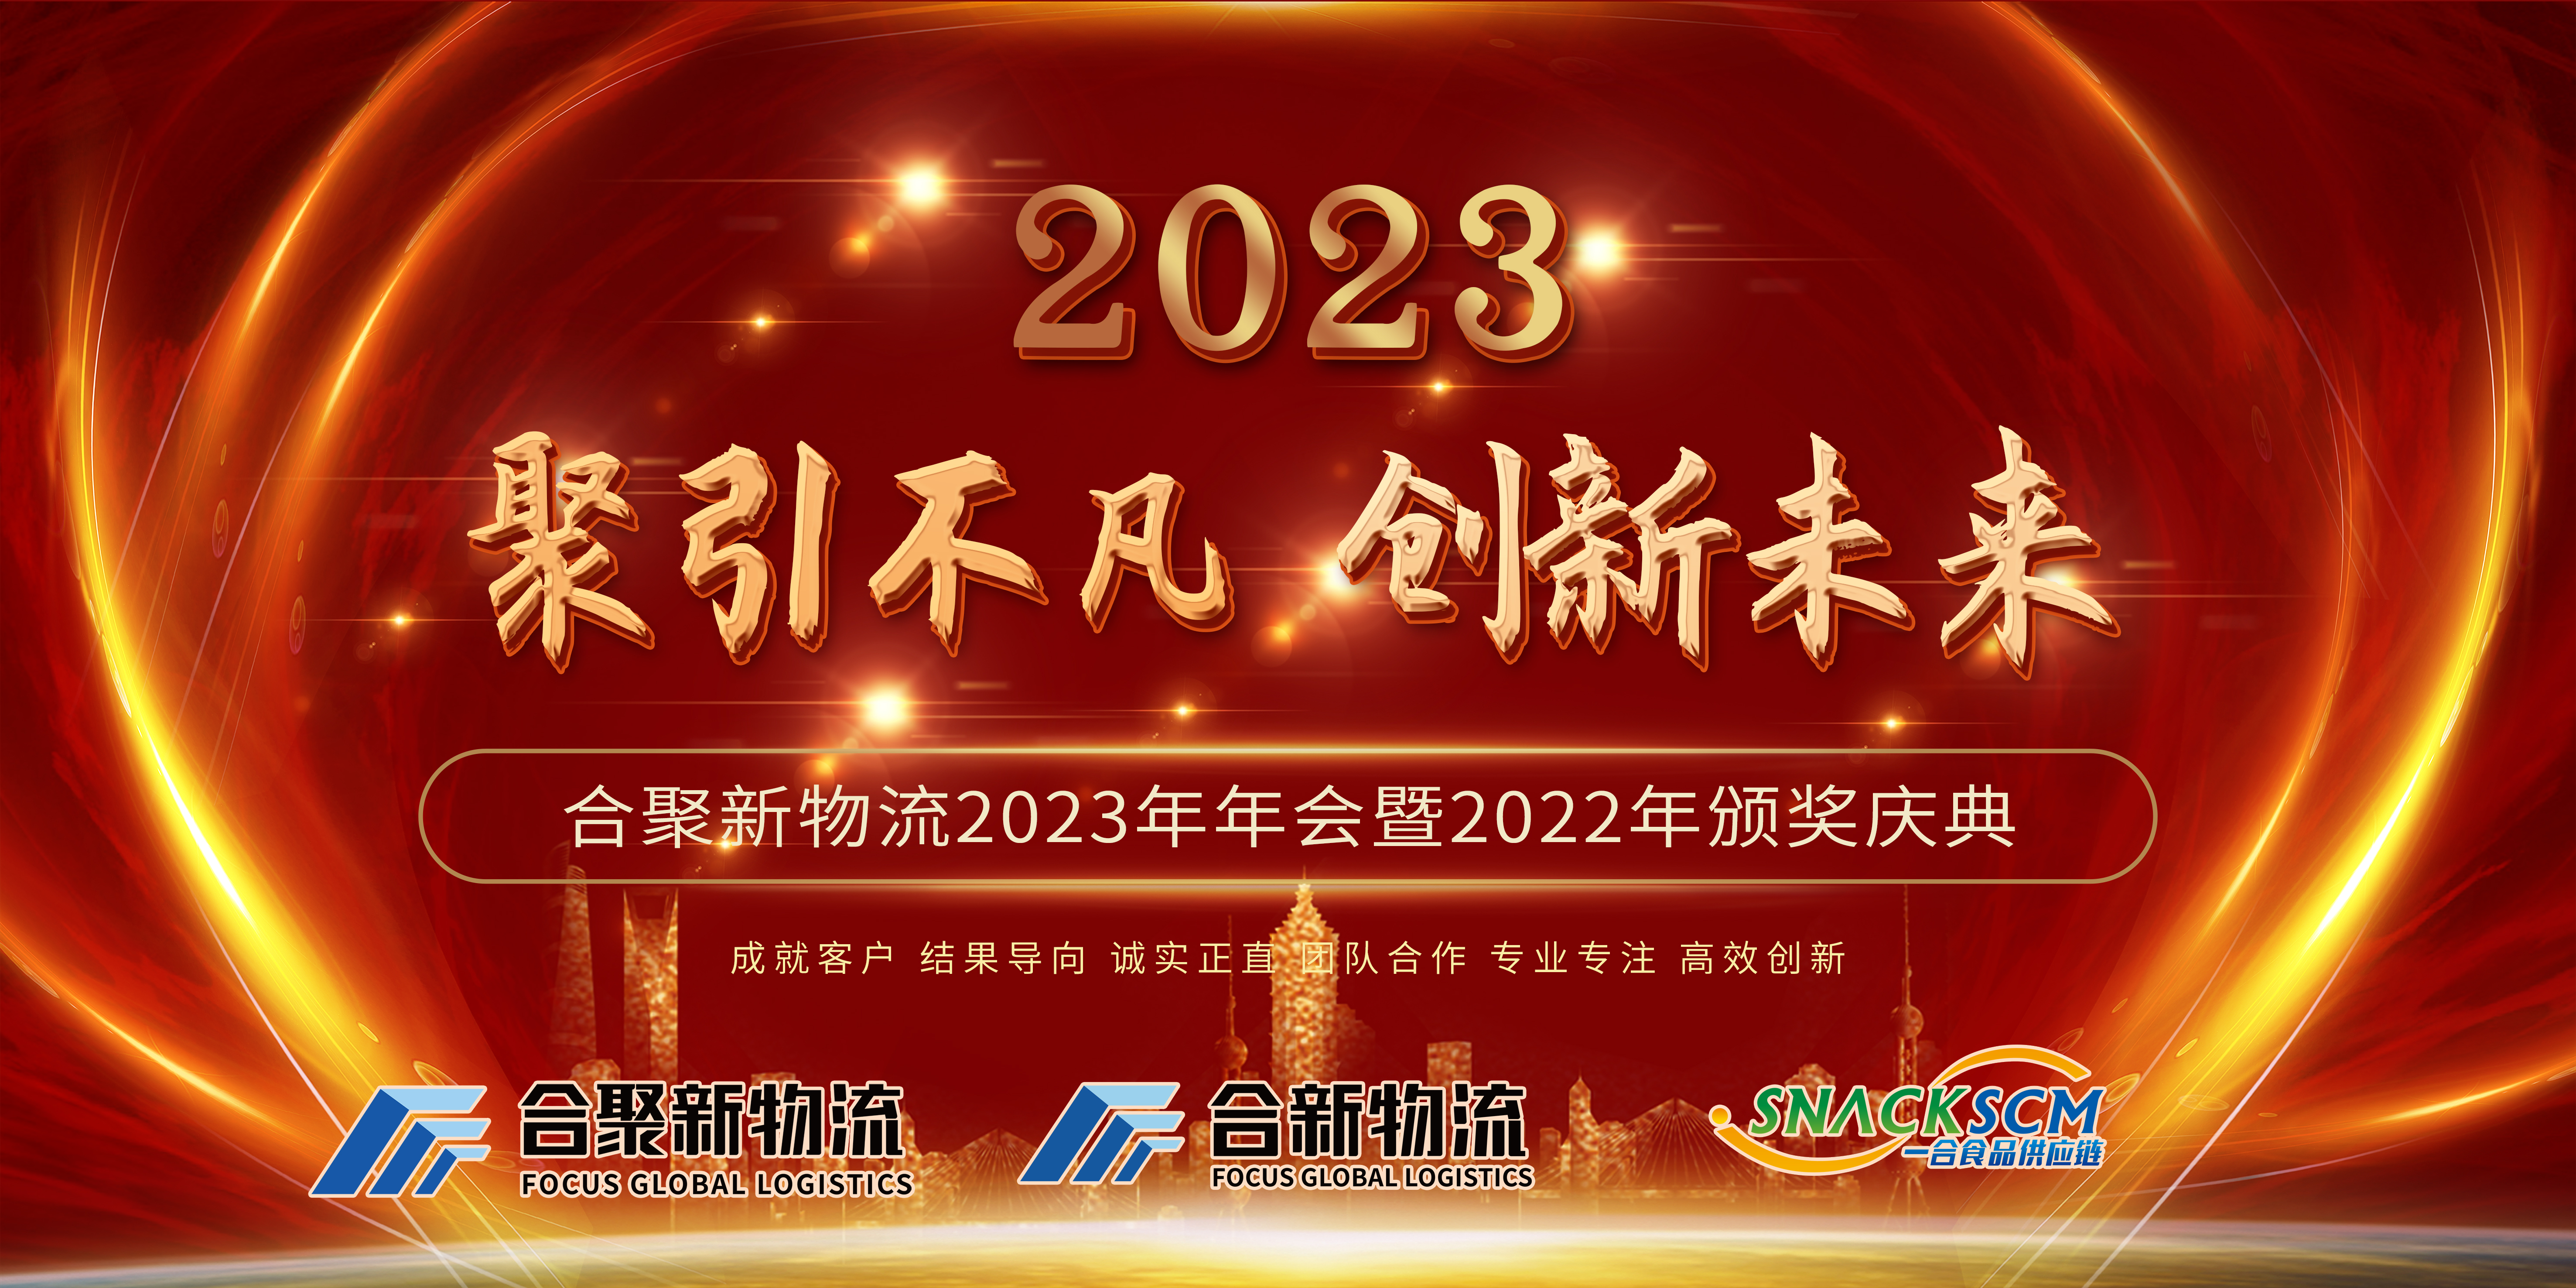 Întâlnirea anuală din 2023 a Focus Global Logistics și ceremonia de premiere din 2022 s-au încheiat cu succes!